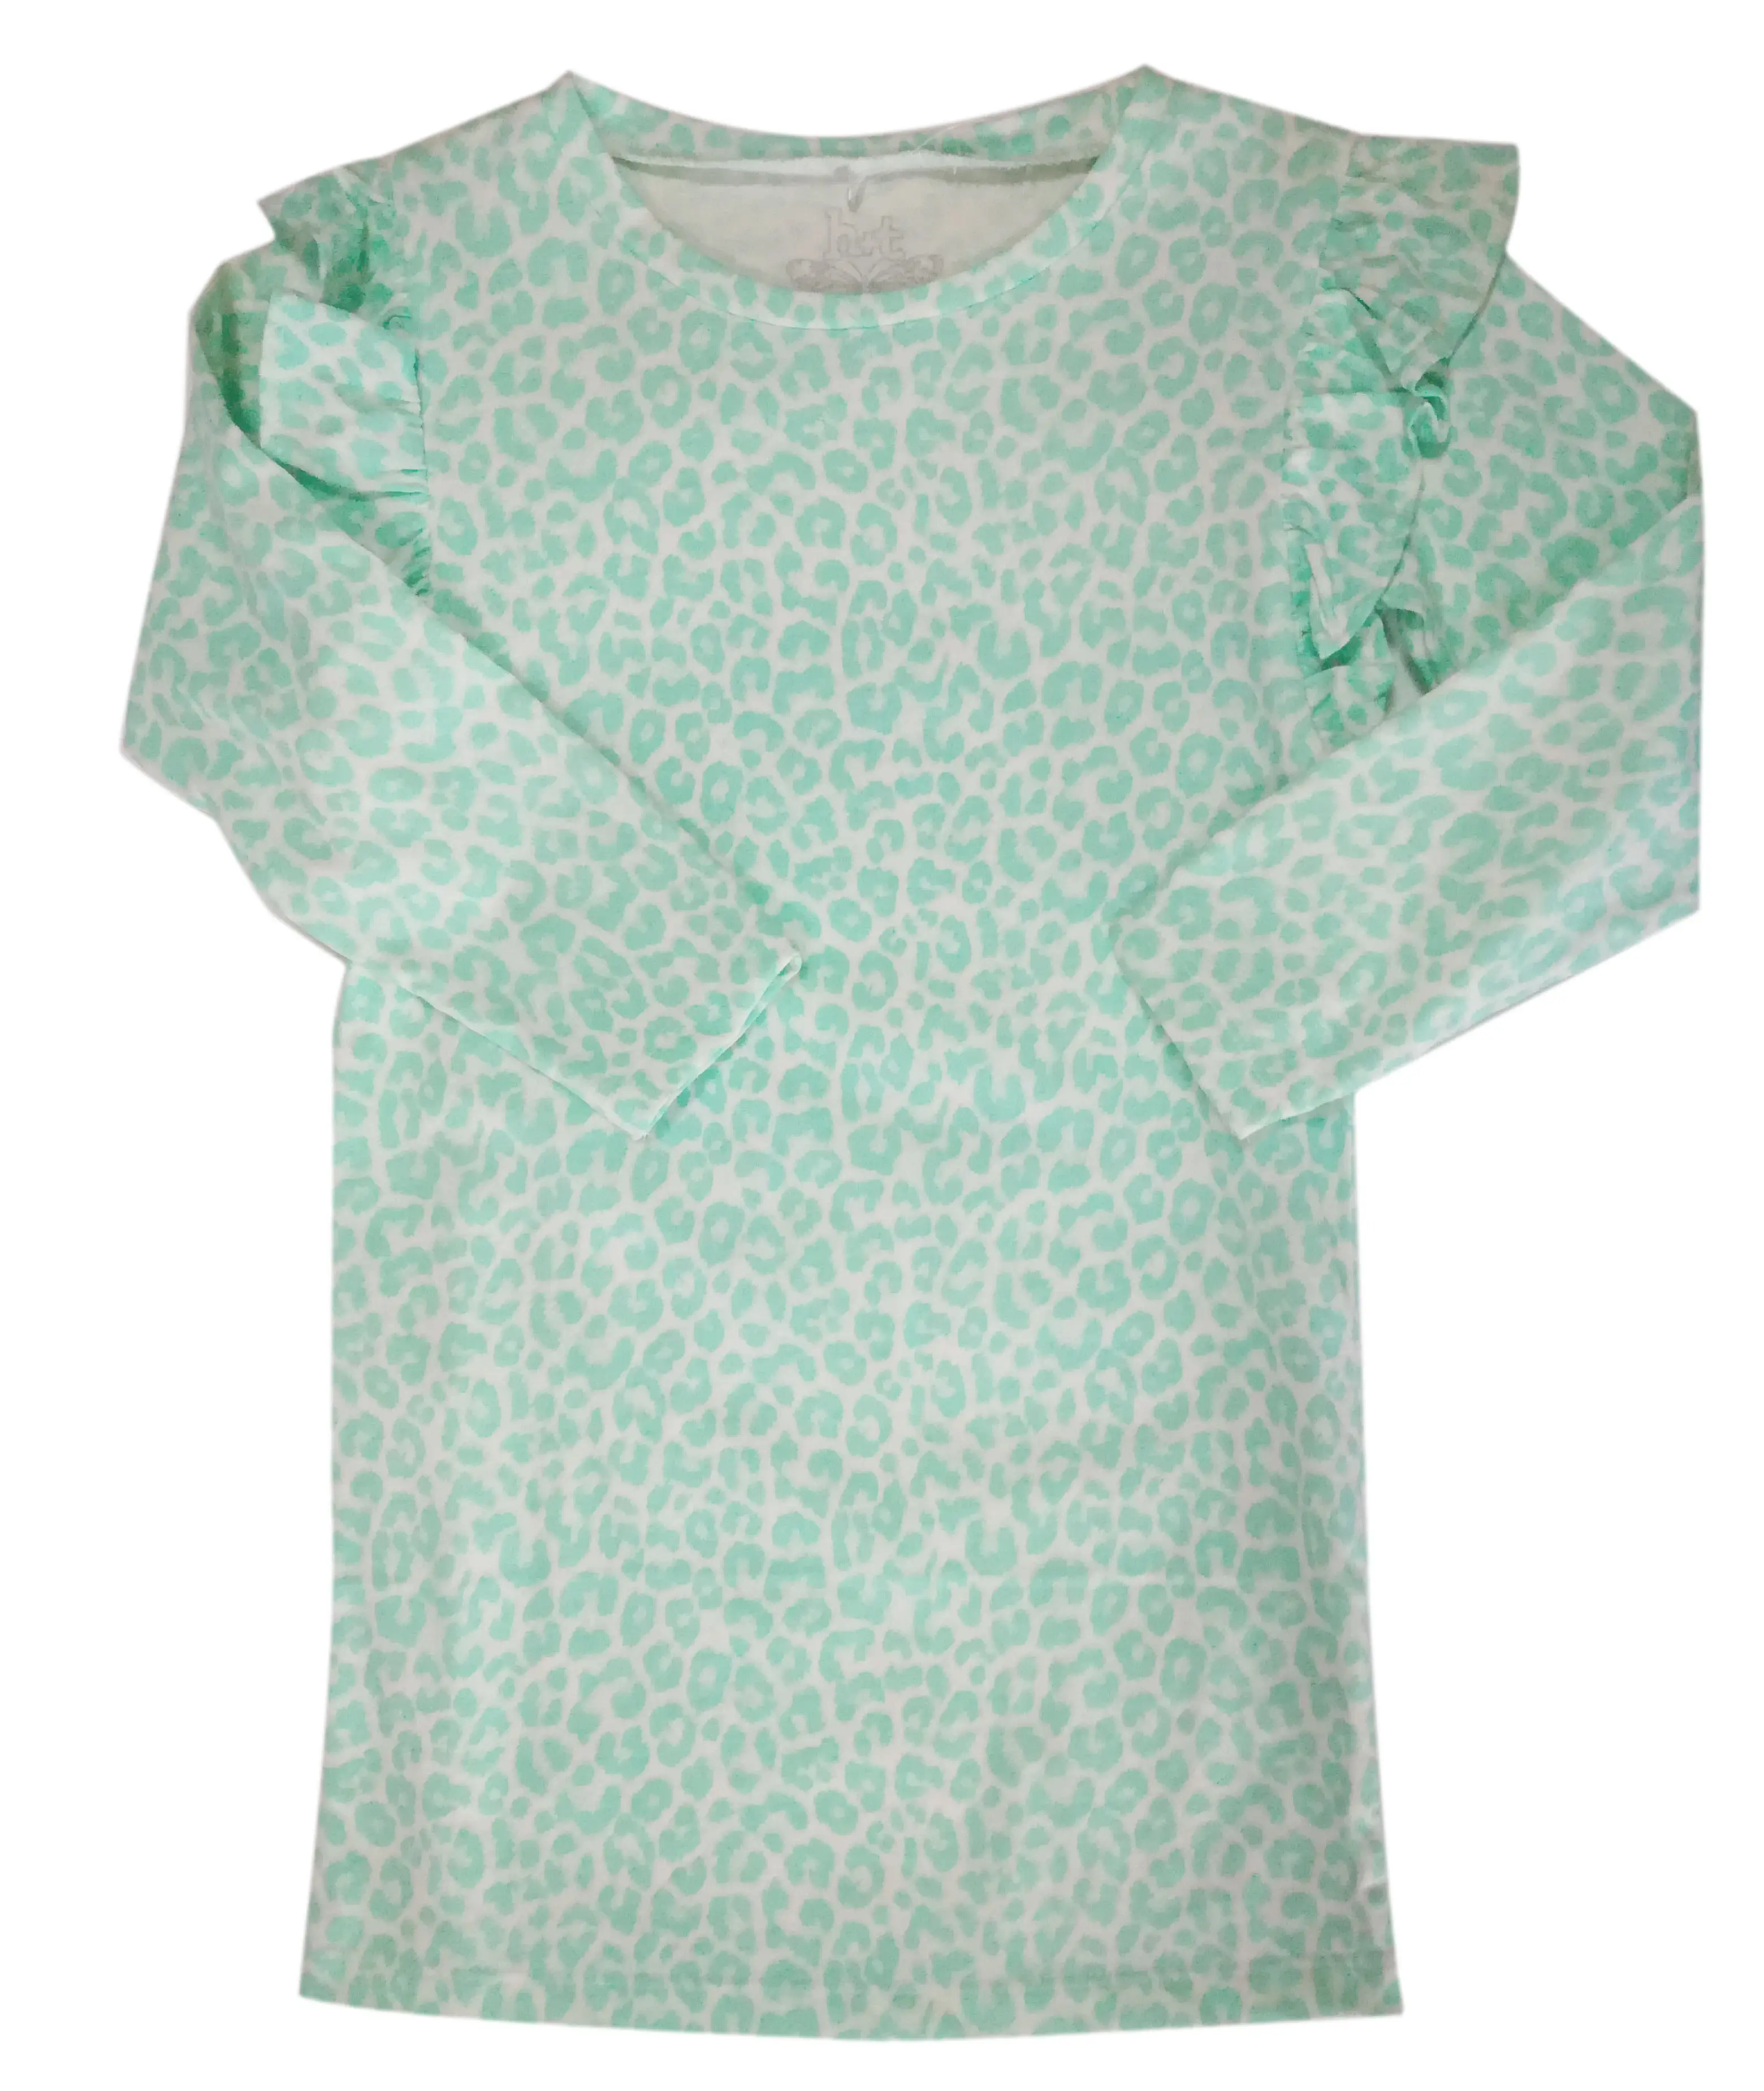 Newest Hot Sale Pretty Green Round Collar Children Dress For Girls